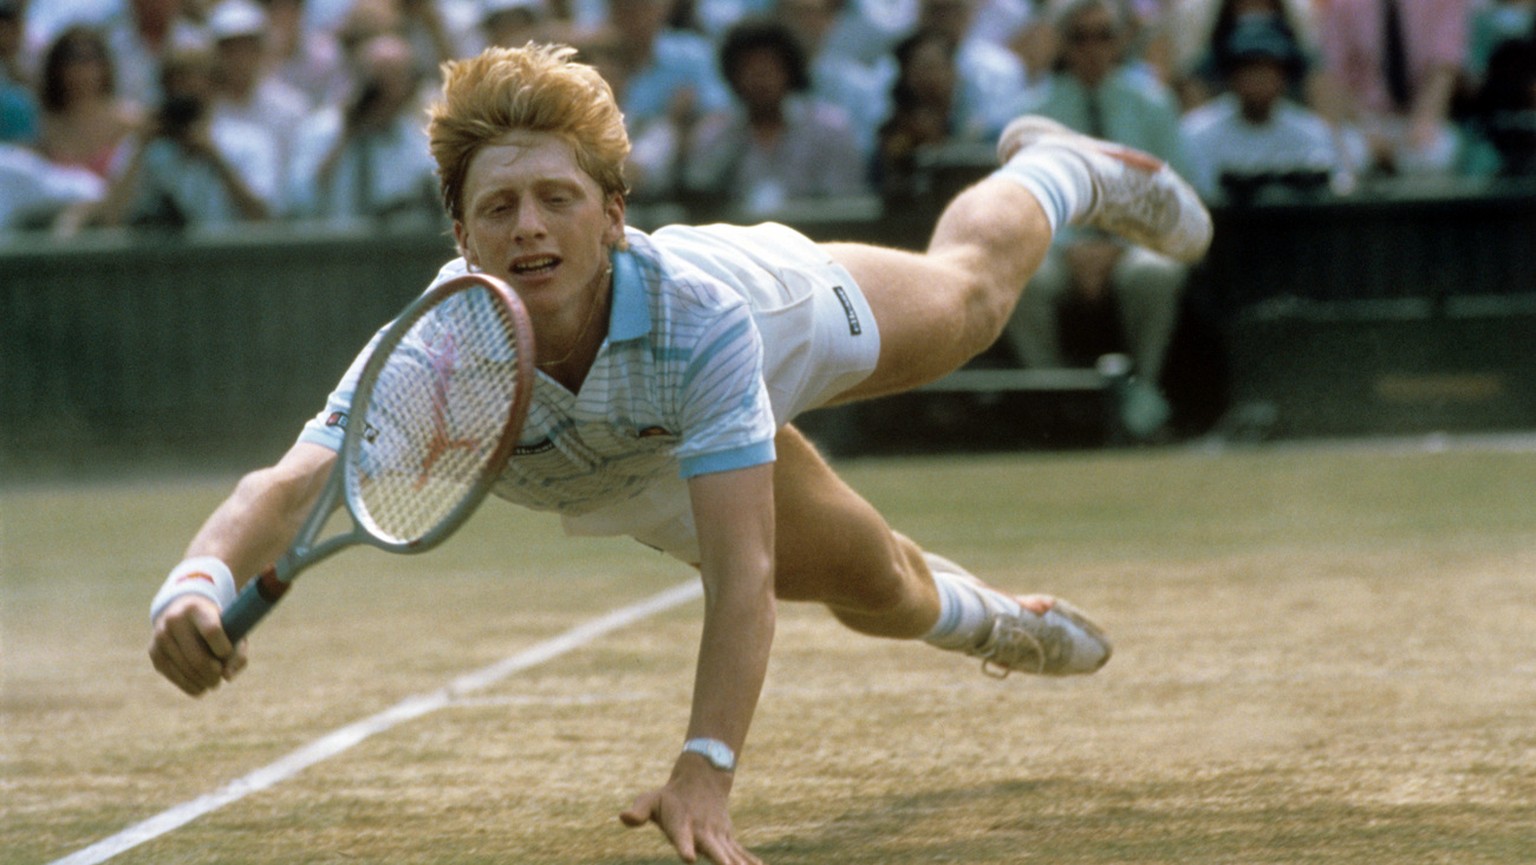 Der deutsche Tennisspieler Boris Becker hechtet während des Turniers in Wimbledon im Juli 1985 hinter einem Ball her. Als jüngster Spieler und erster Deutscher überhaupt gewann der ungesetzte Boris Be ...